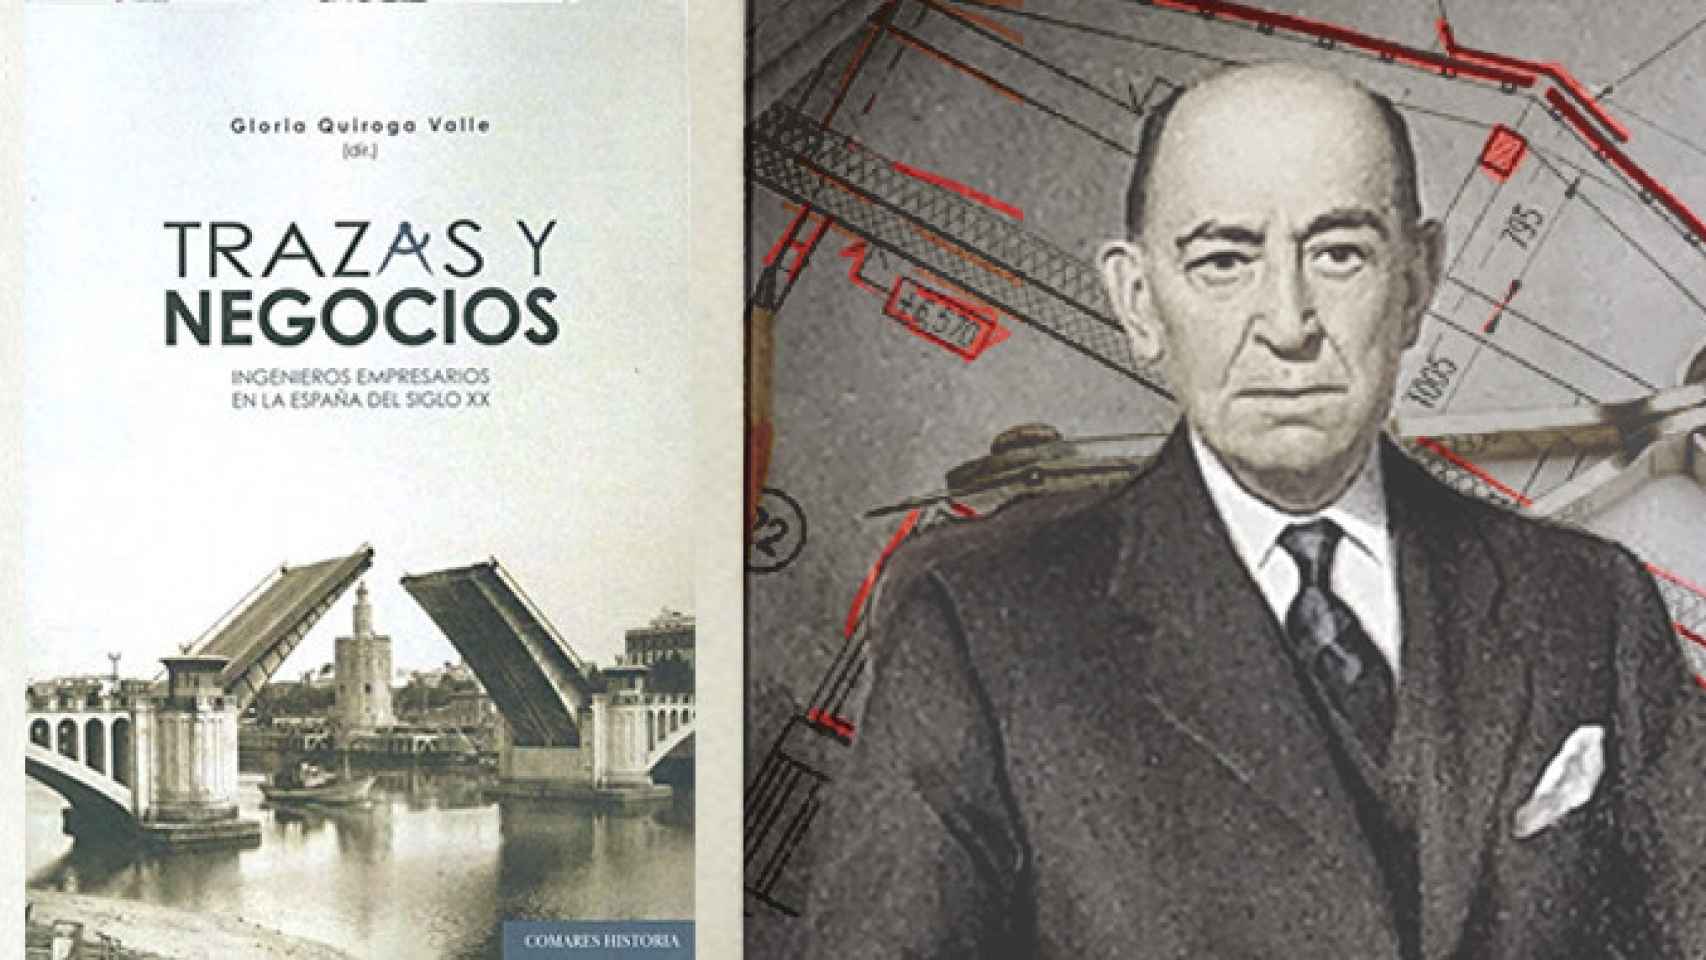 Mariano Lozano Colás protagoniza uno de los capítulos del libro Trazas y negocios